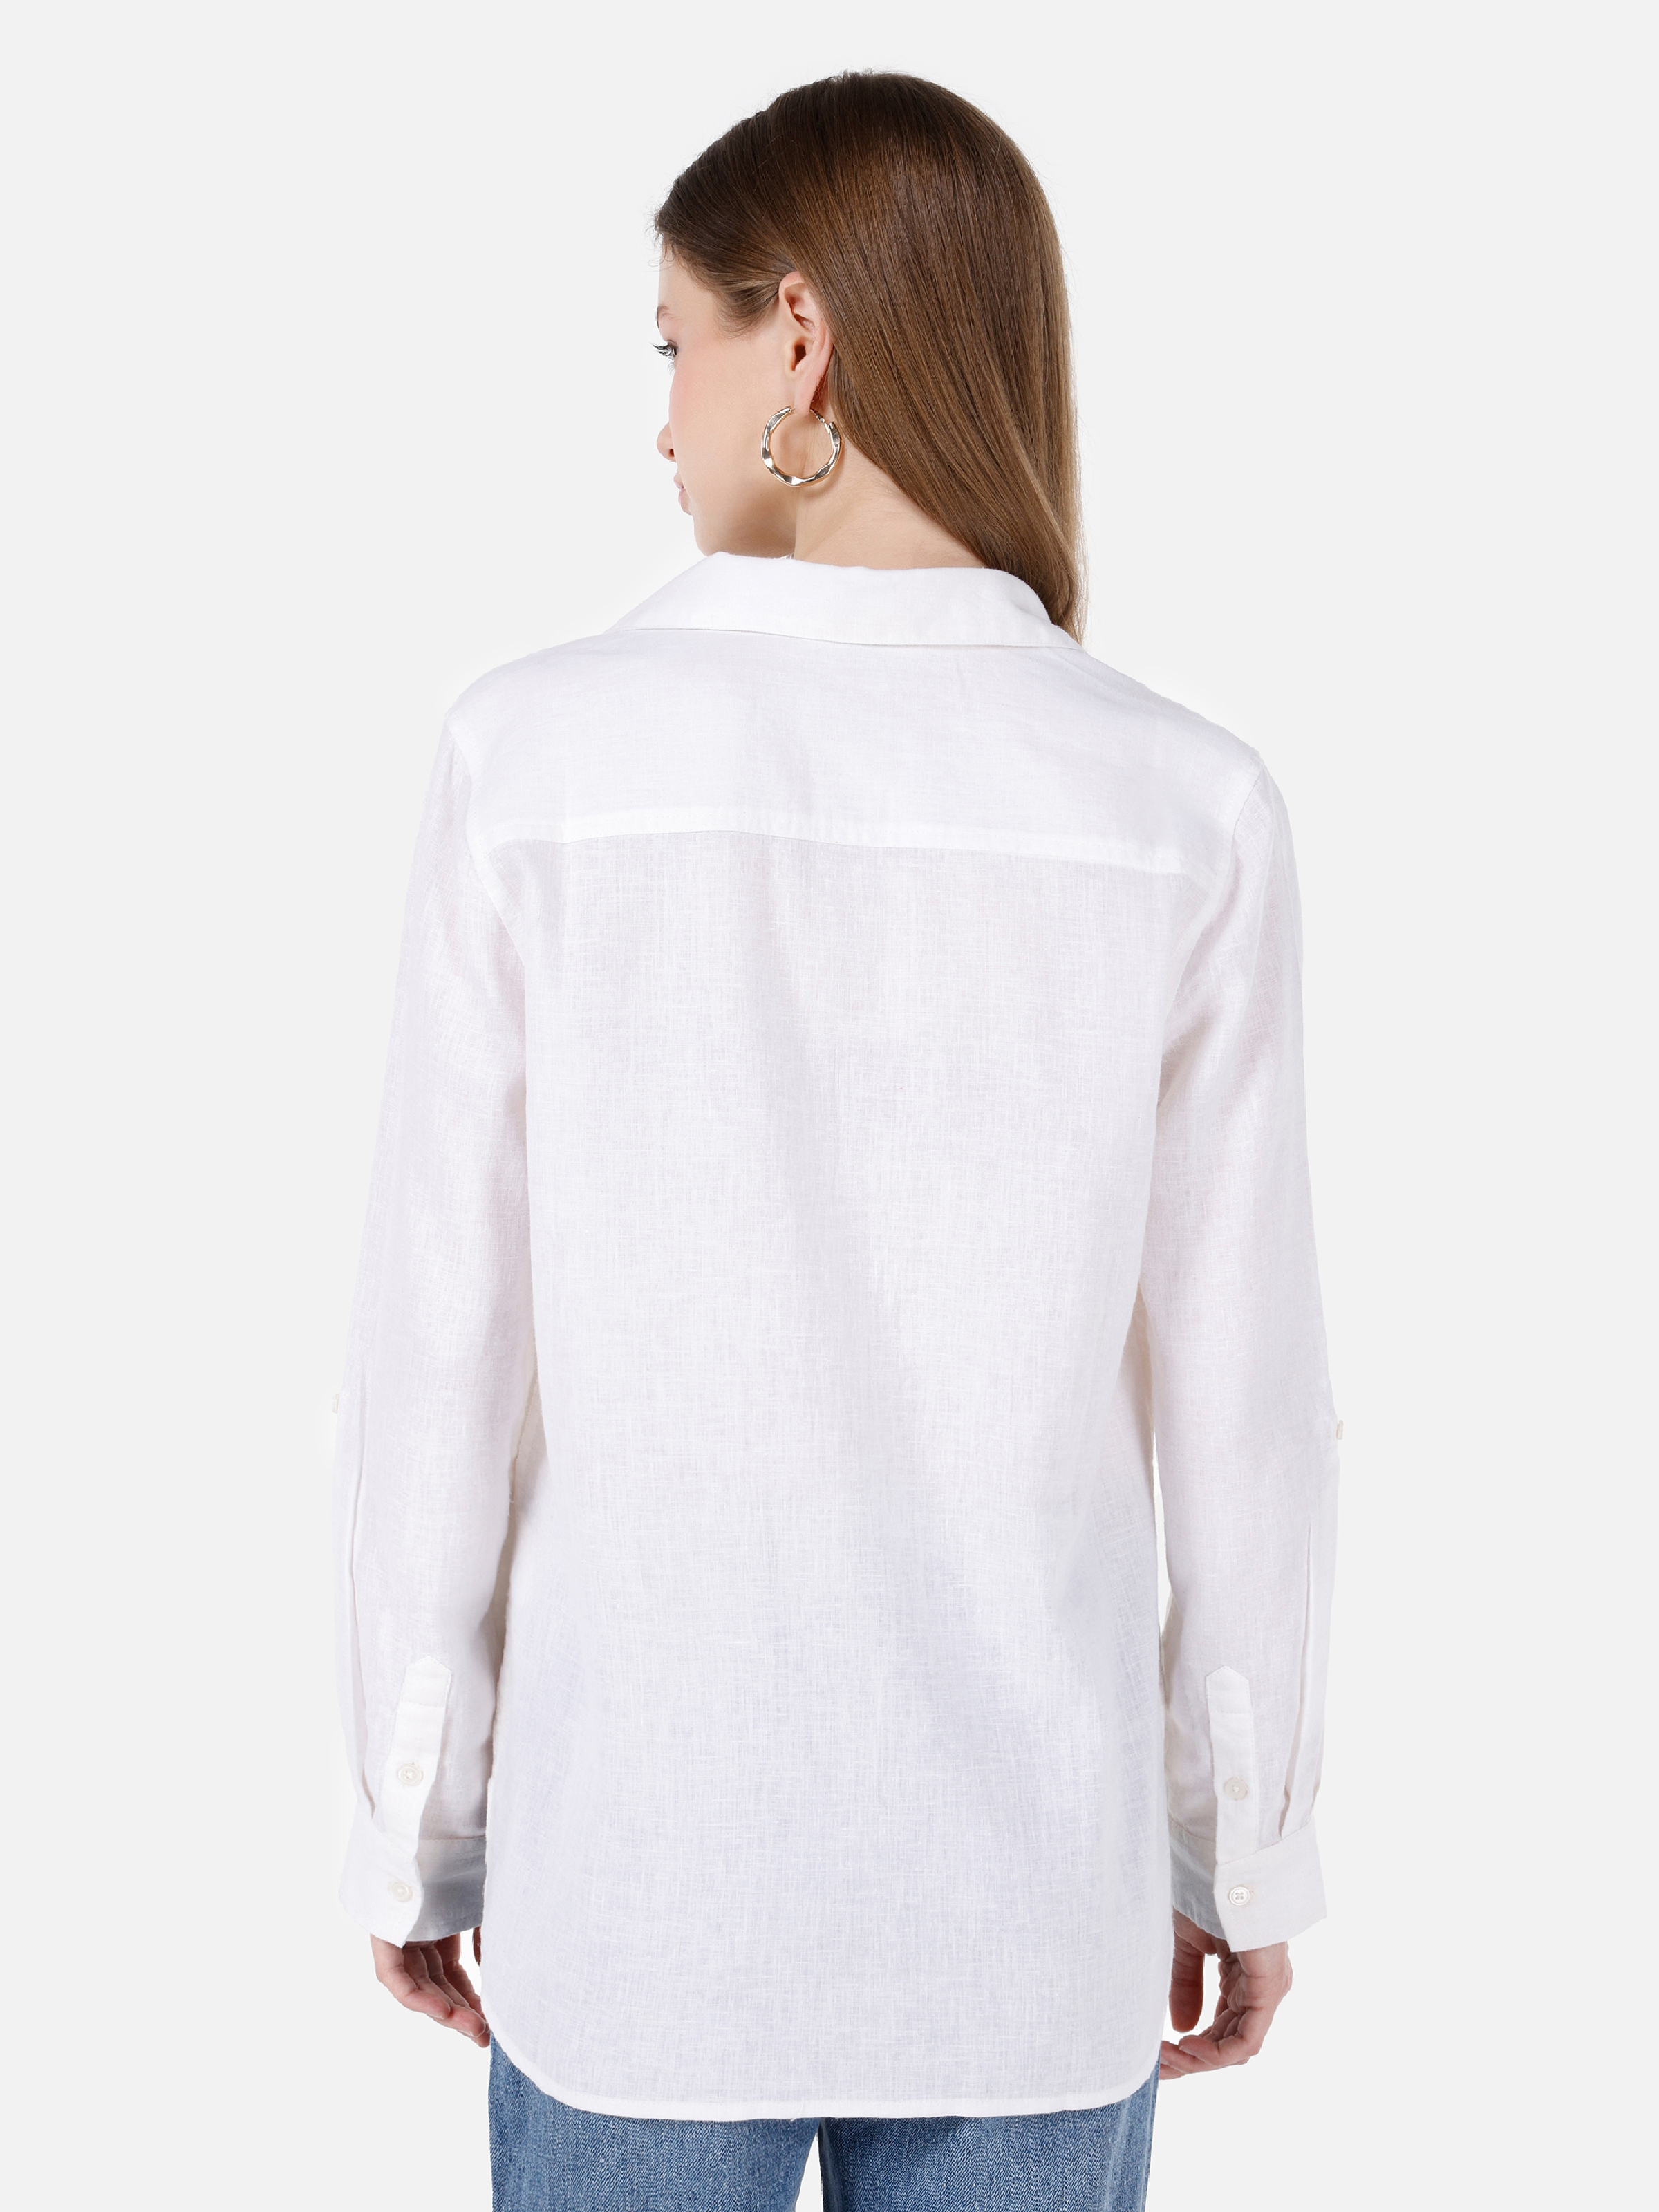 Afișați detalii pentru Bluza Cu Maneca Lunga De Dama Alb Regular Fit  